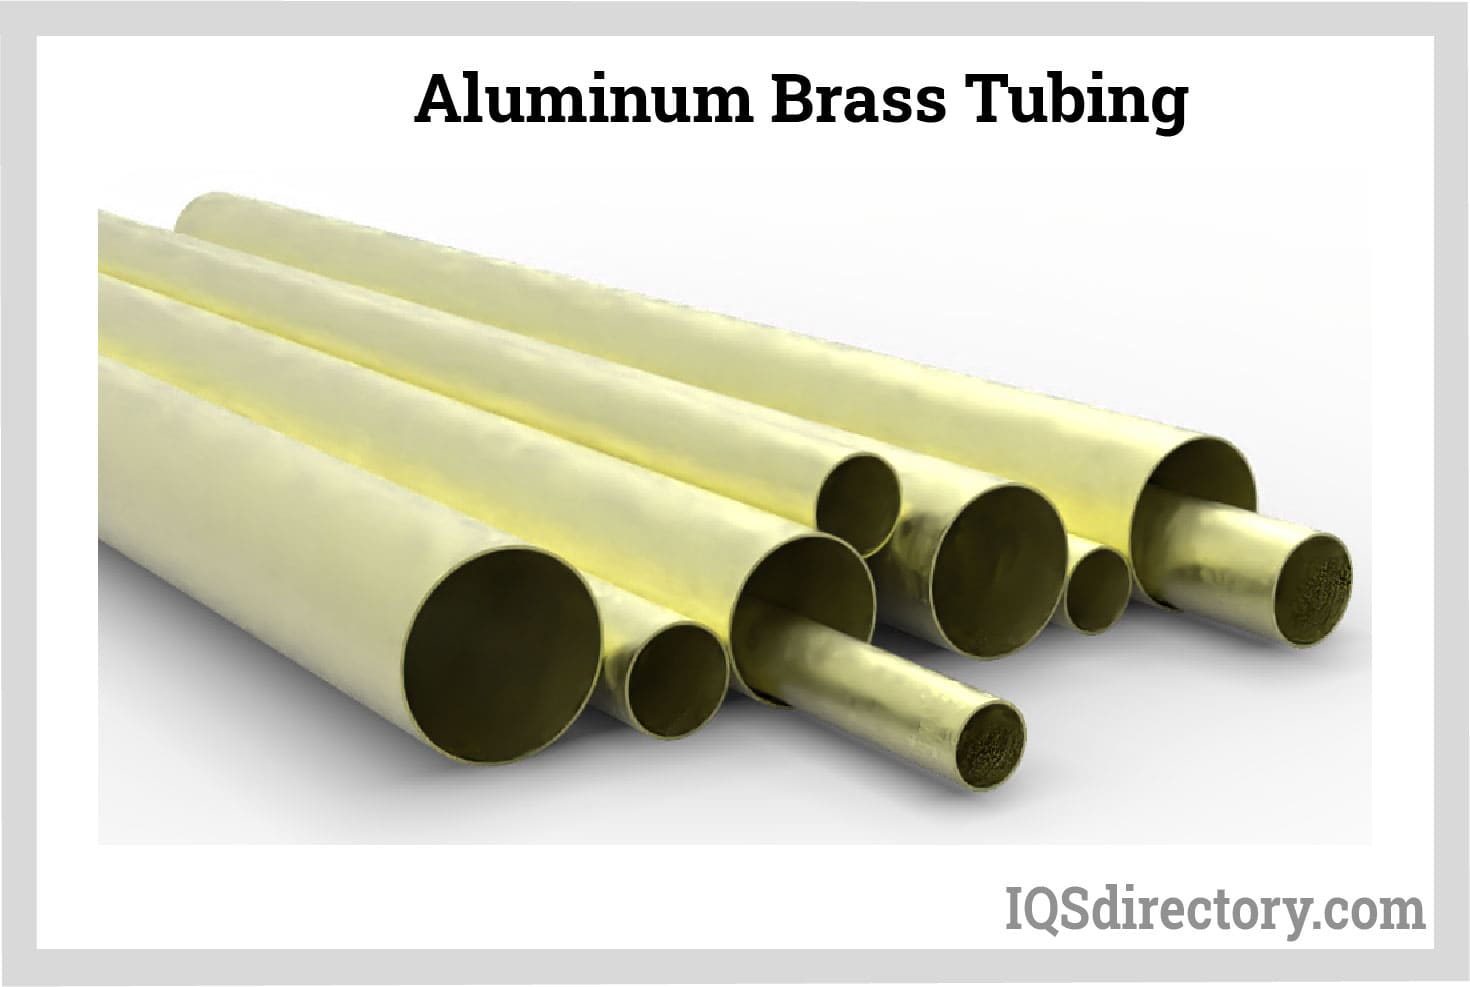 Aluminum Brass Tubing